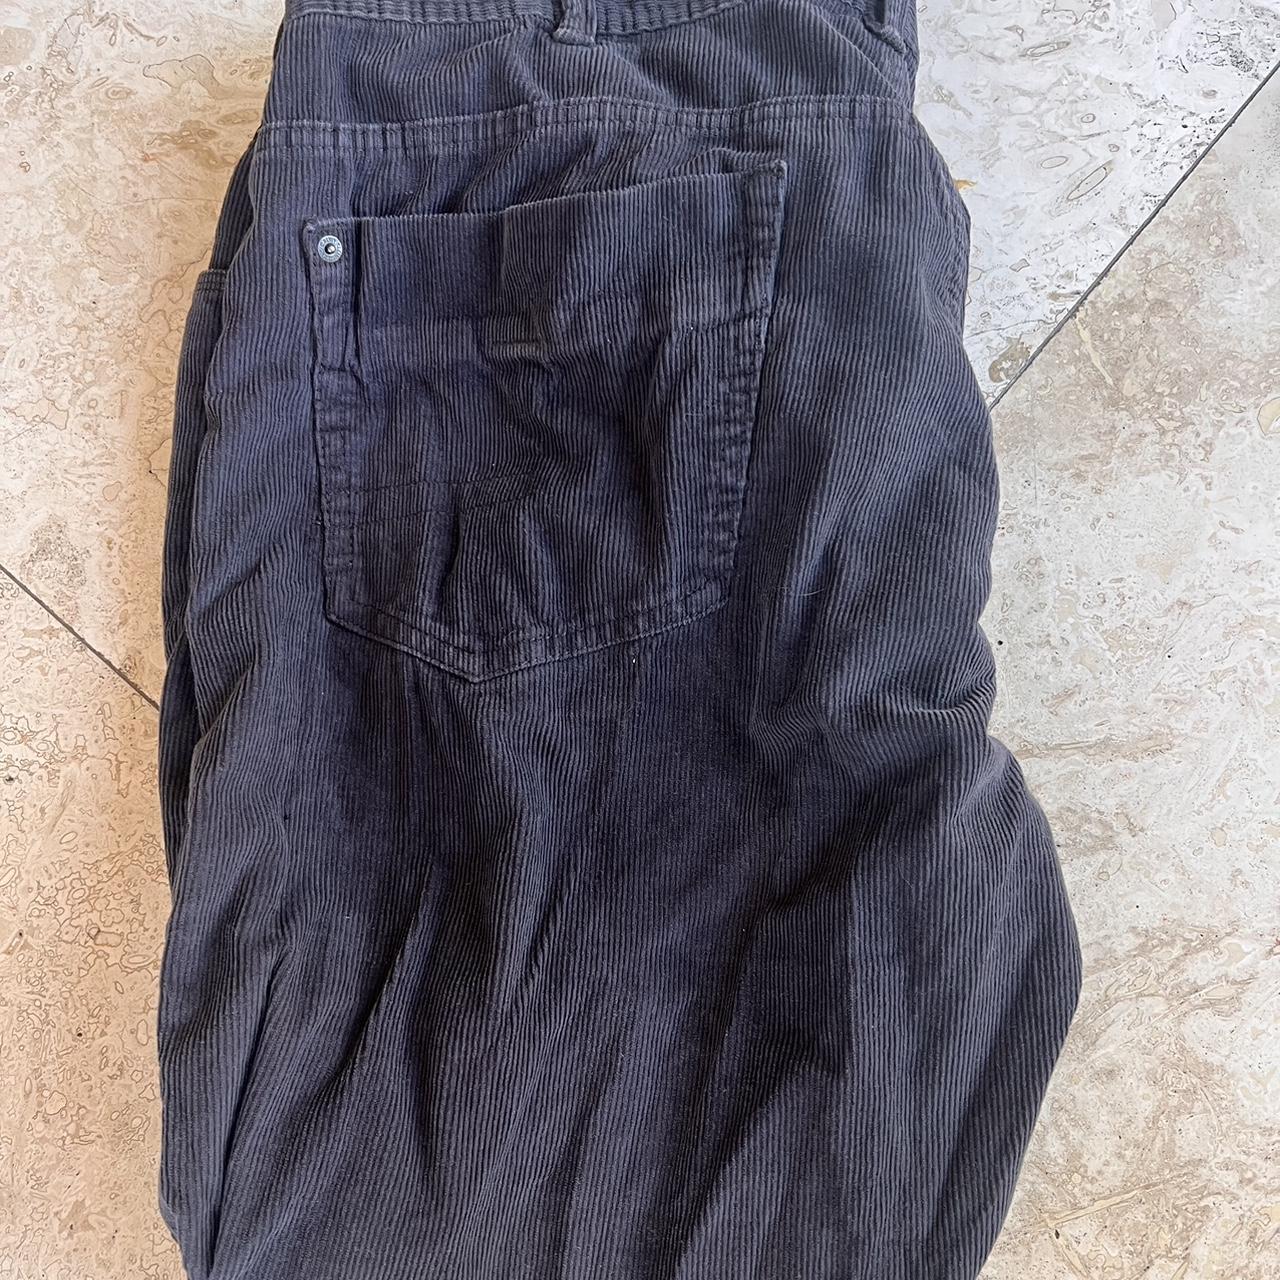 Calvin cline black corduroy pants 38x30 Condition 8/10 - Depop